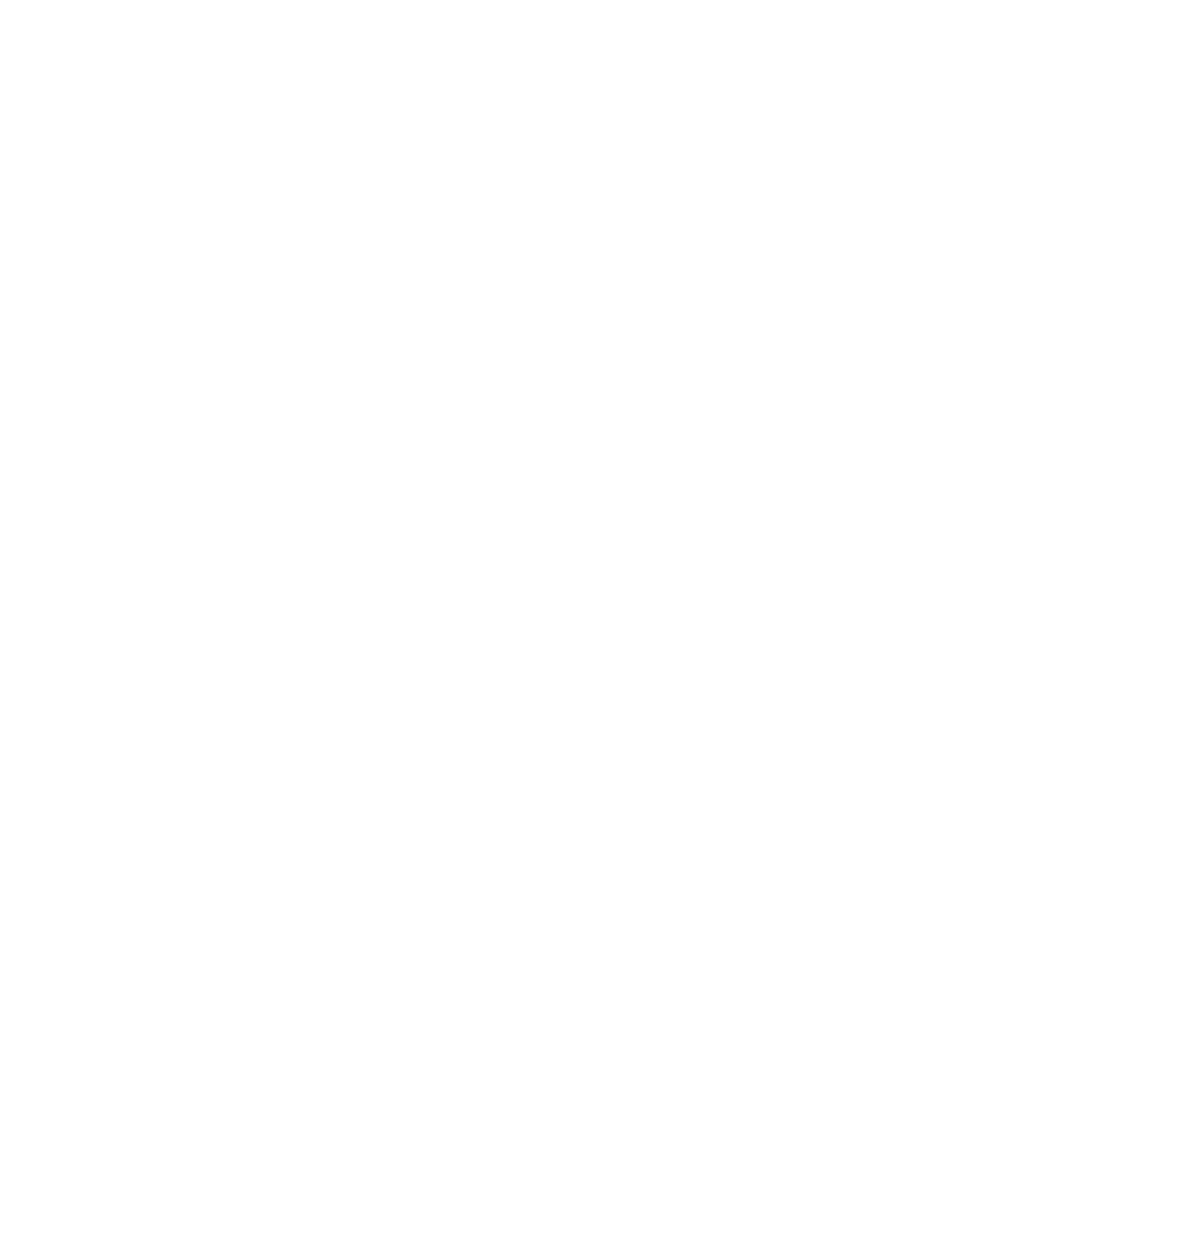 BUW HereForGood Community Partner White Outline.png